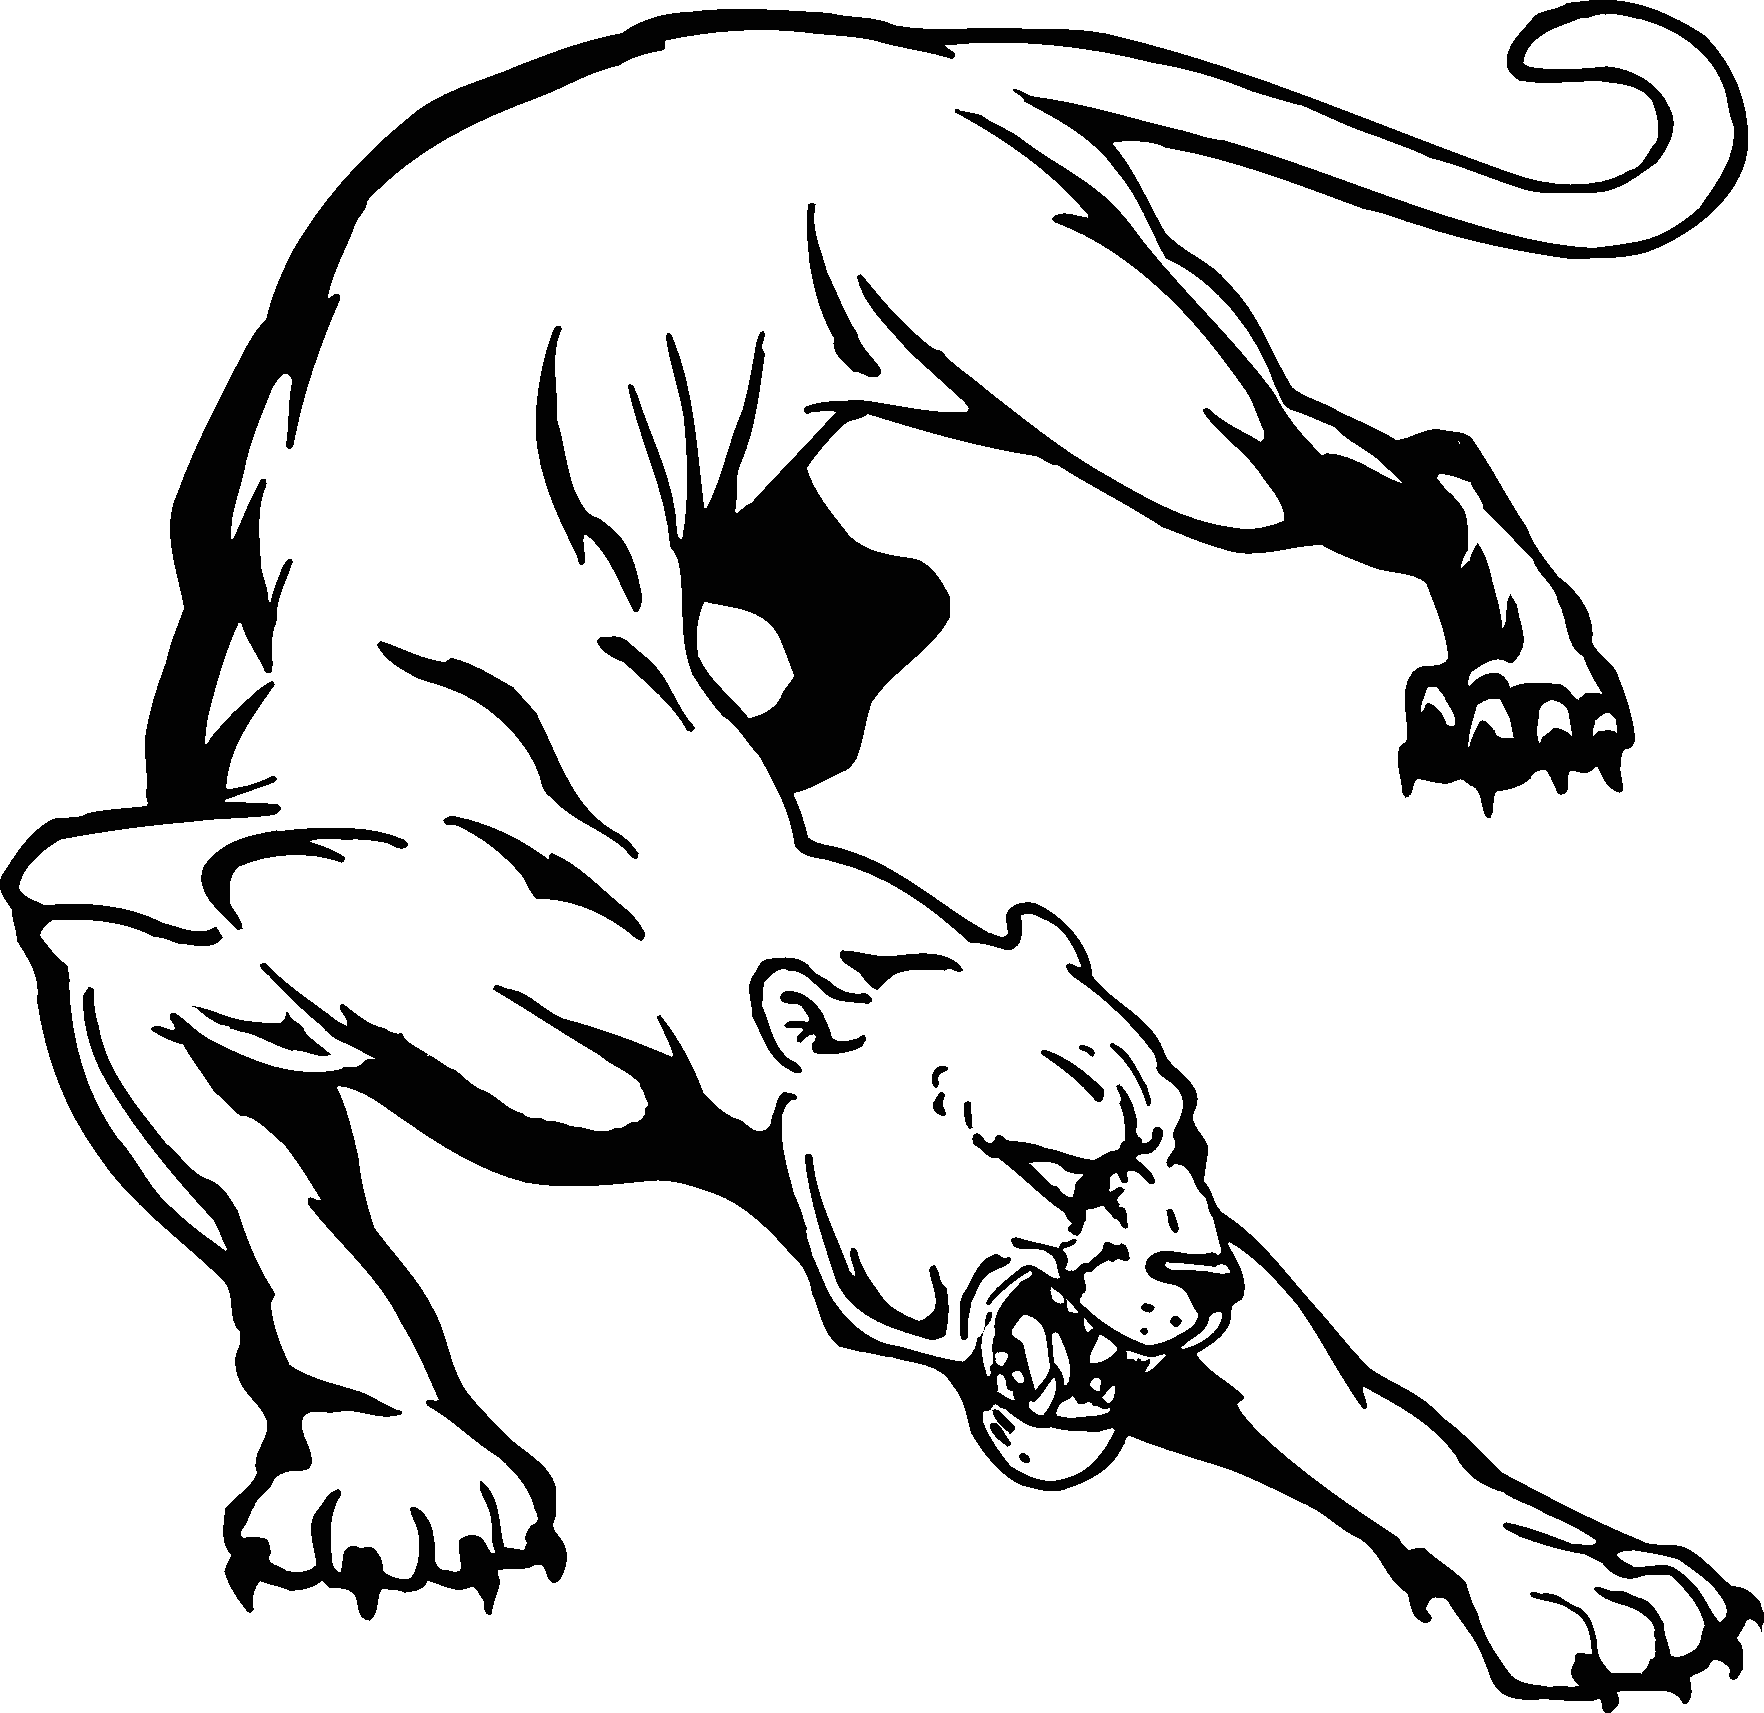 Black and White Panther Logo - Free Black Panther Clipart, Download Free Clip Art, Free Clip Art on ...